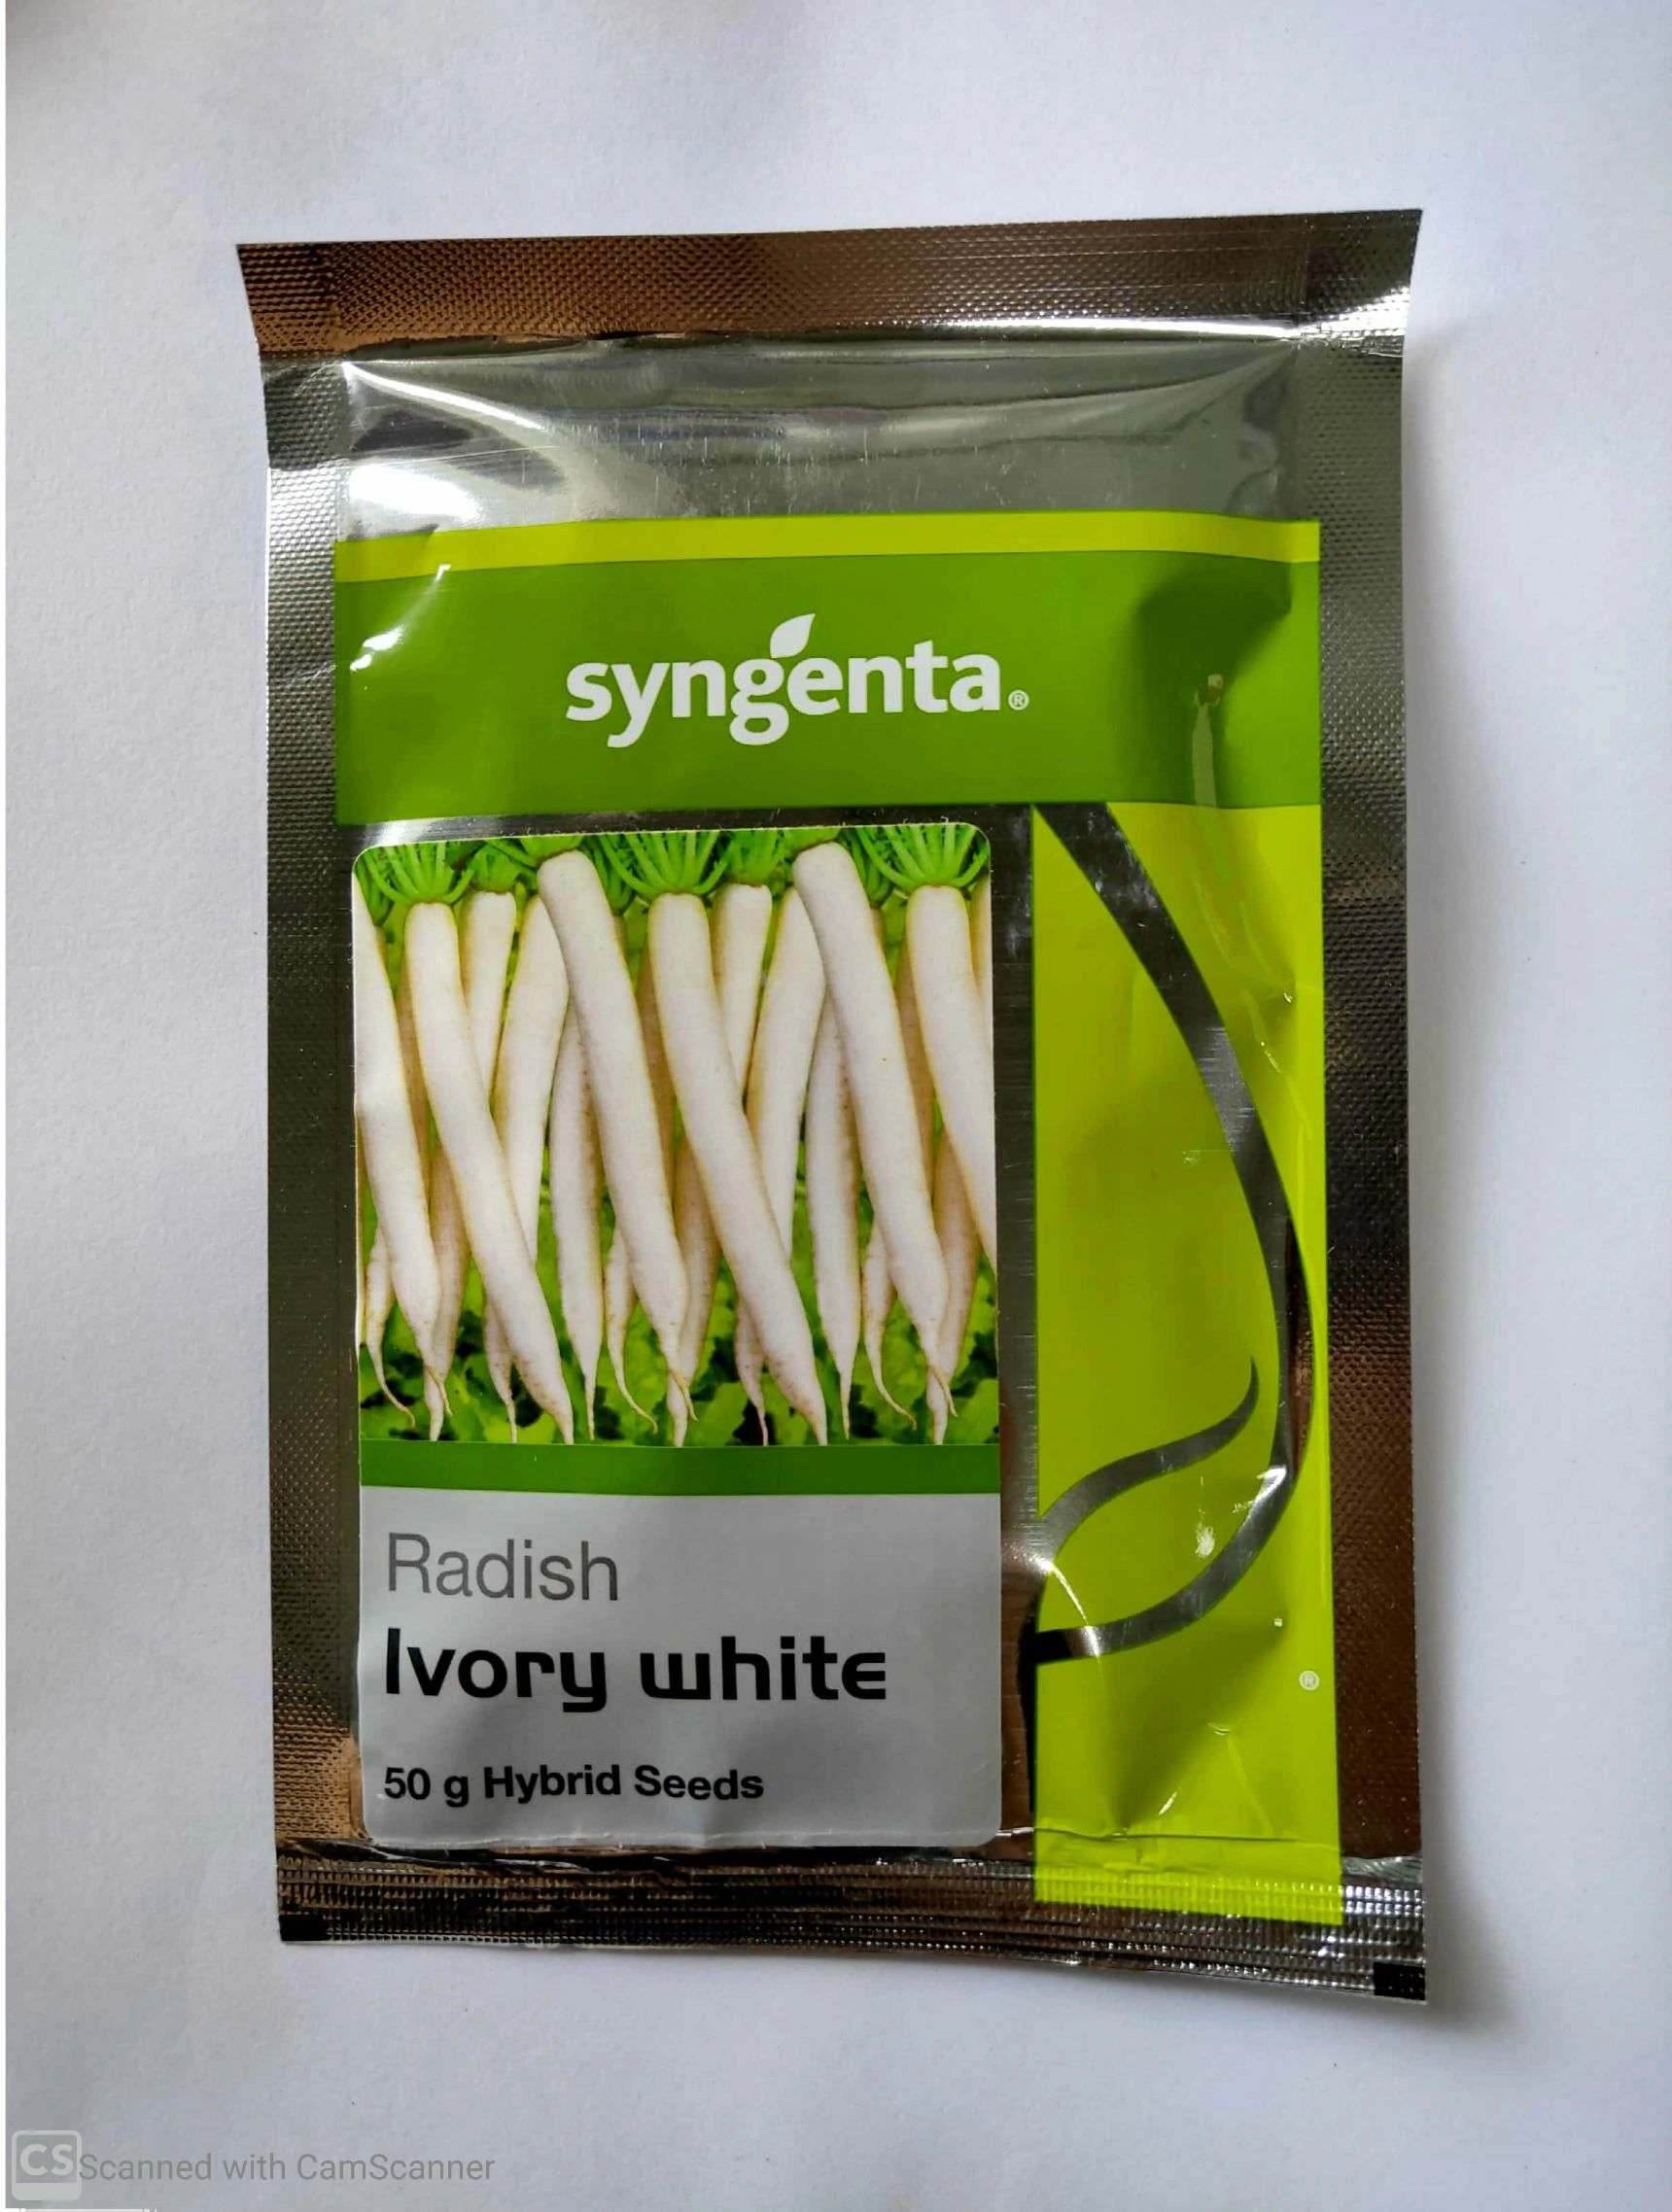 Muli Ivory White (Radish) Syngenta